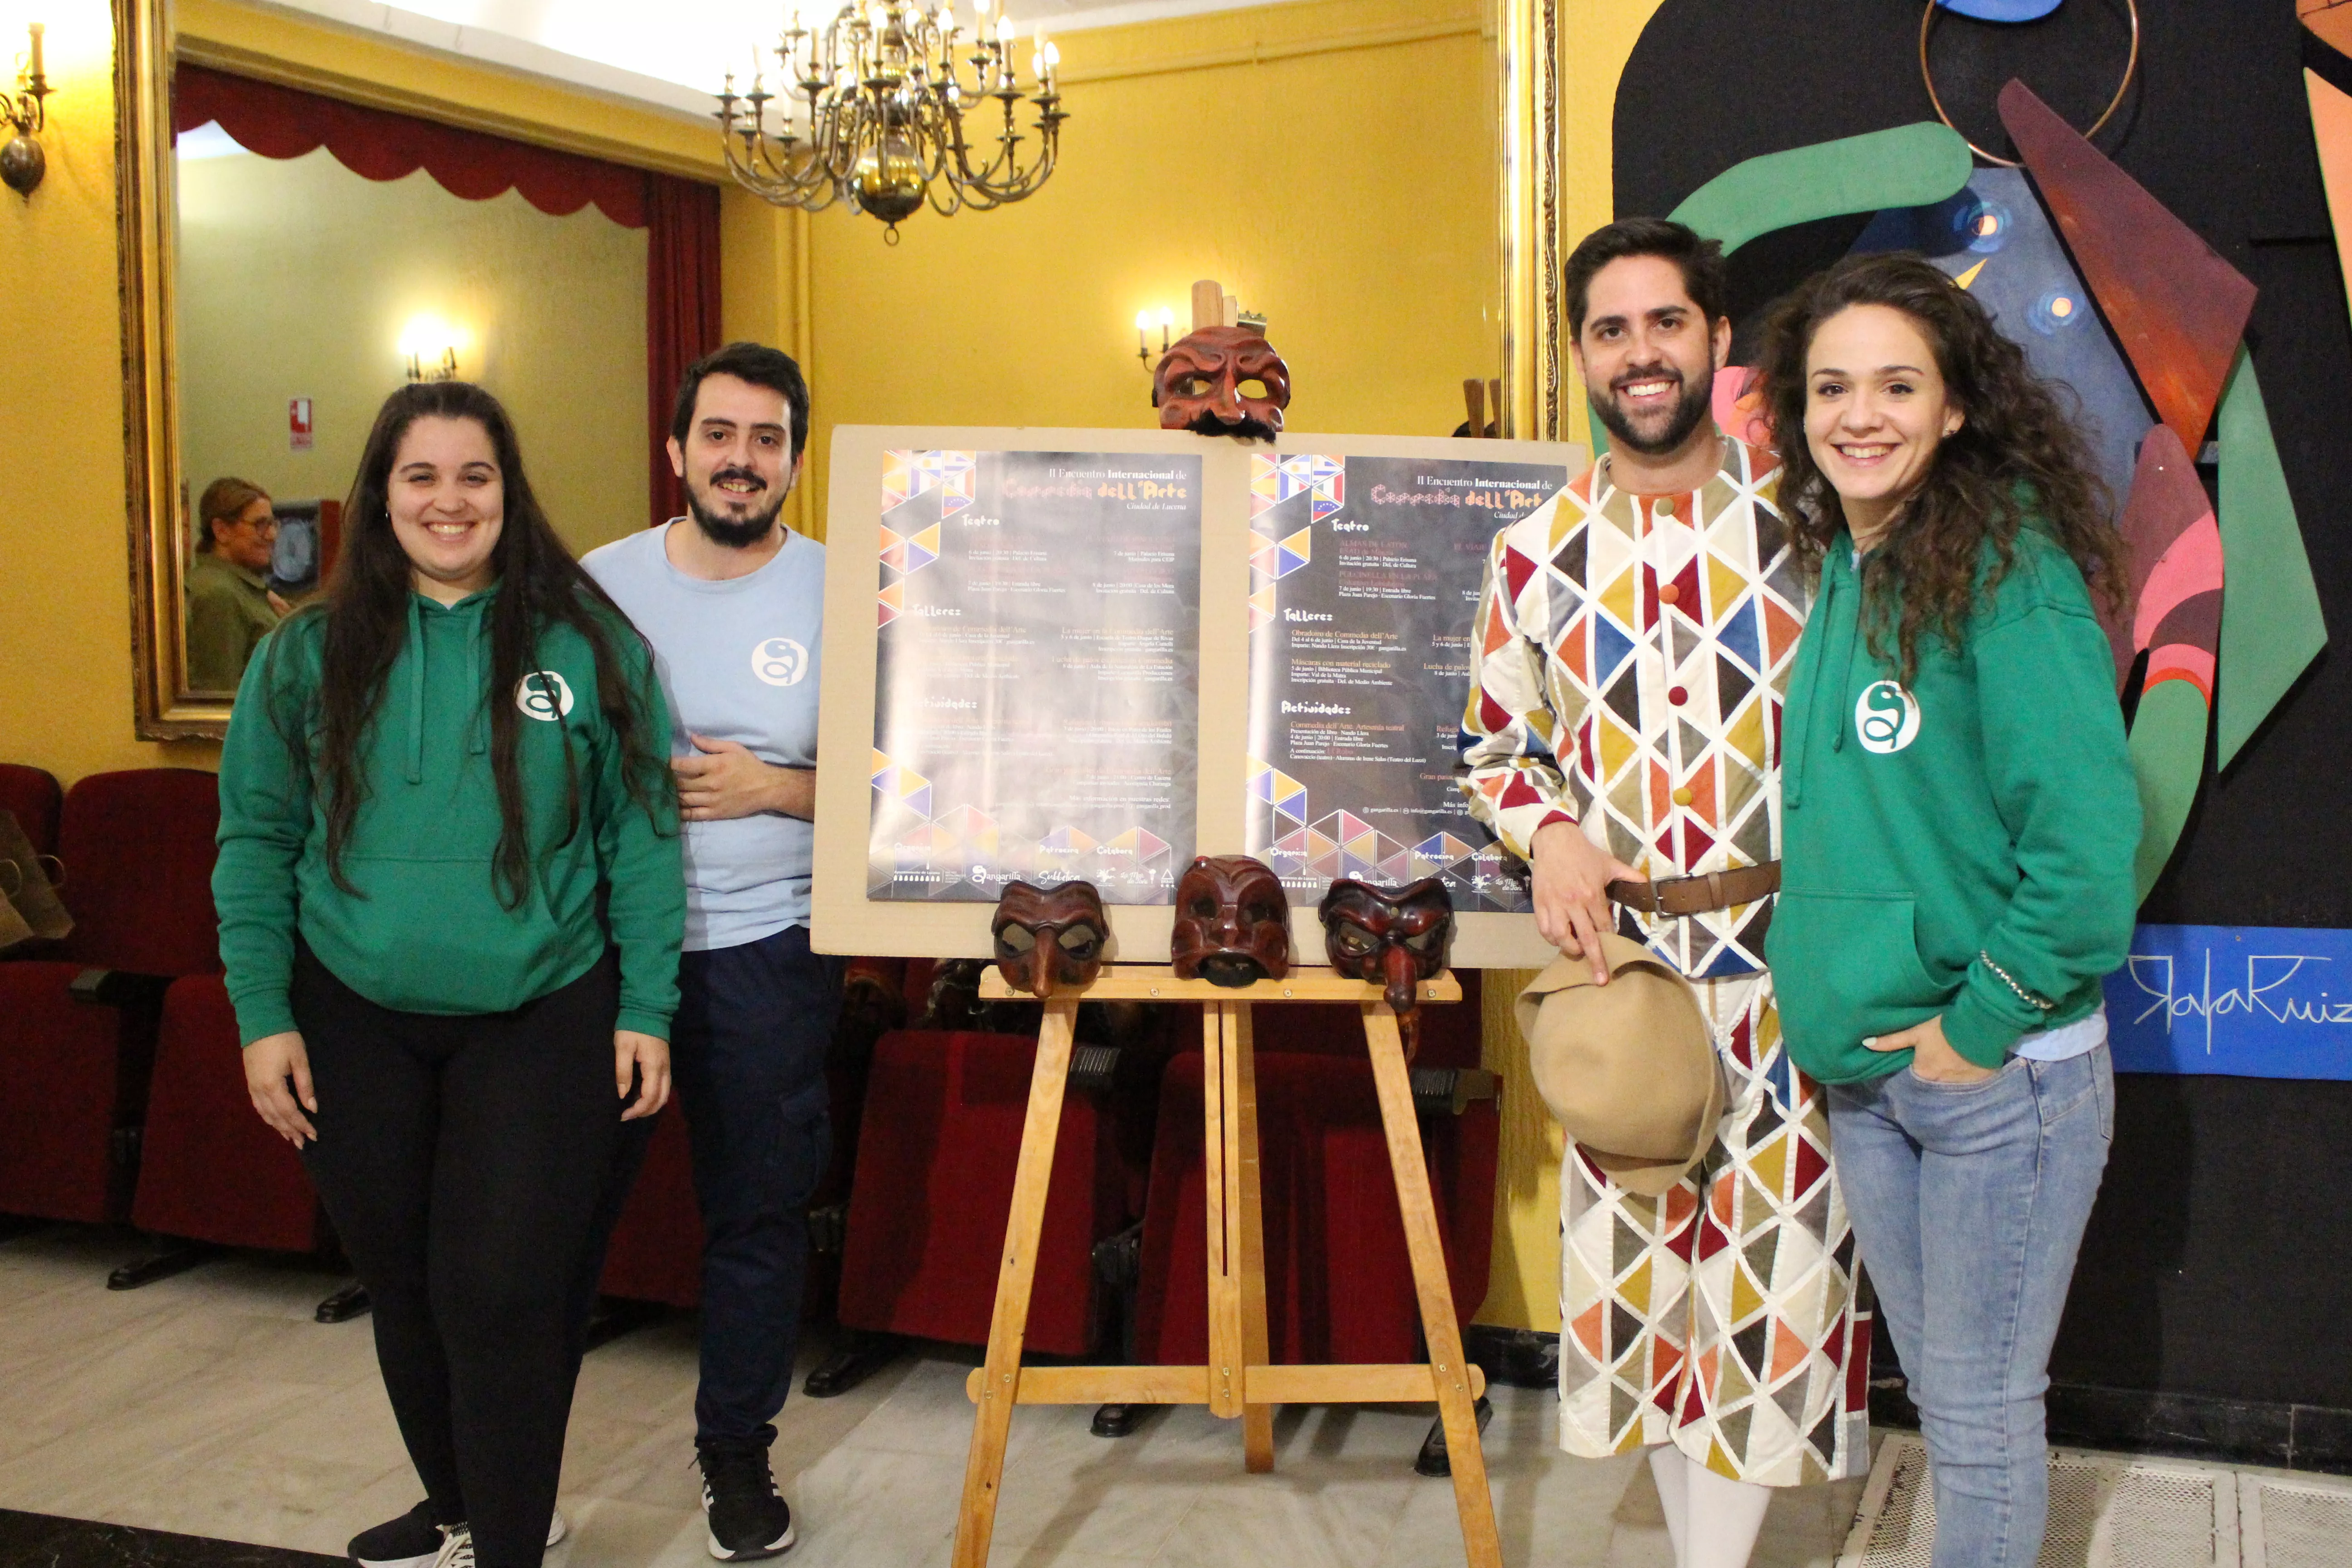 Presentación del II Encuentro Internacional de Commedia dell’Arte “Ciudad de Lucena”